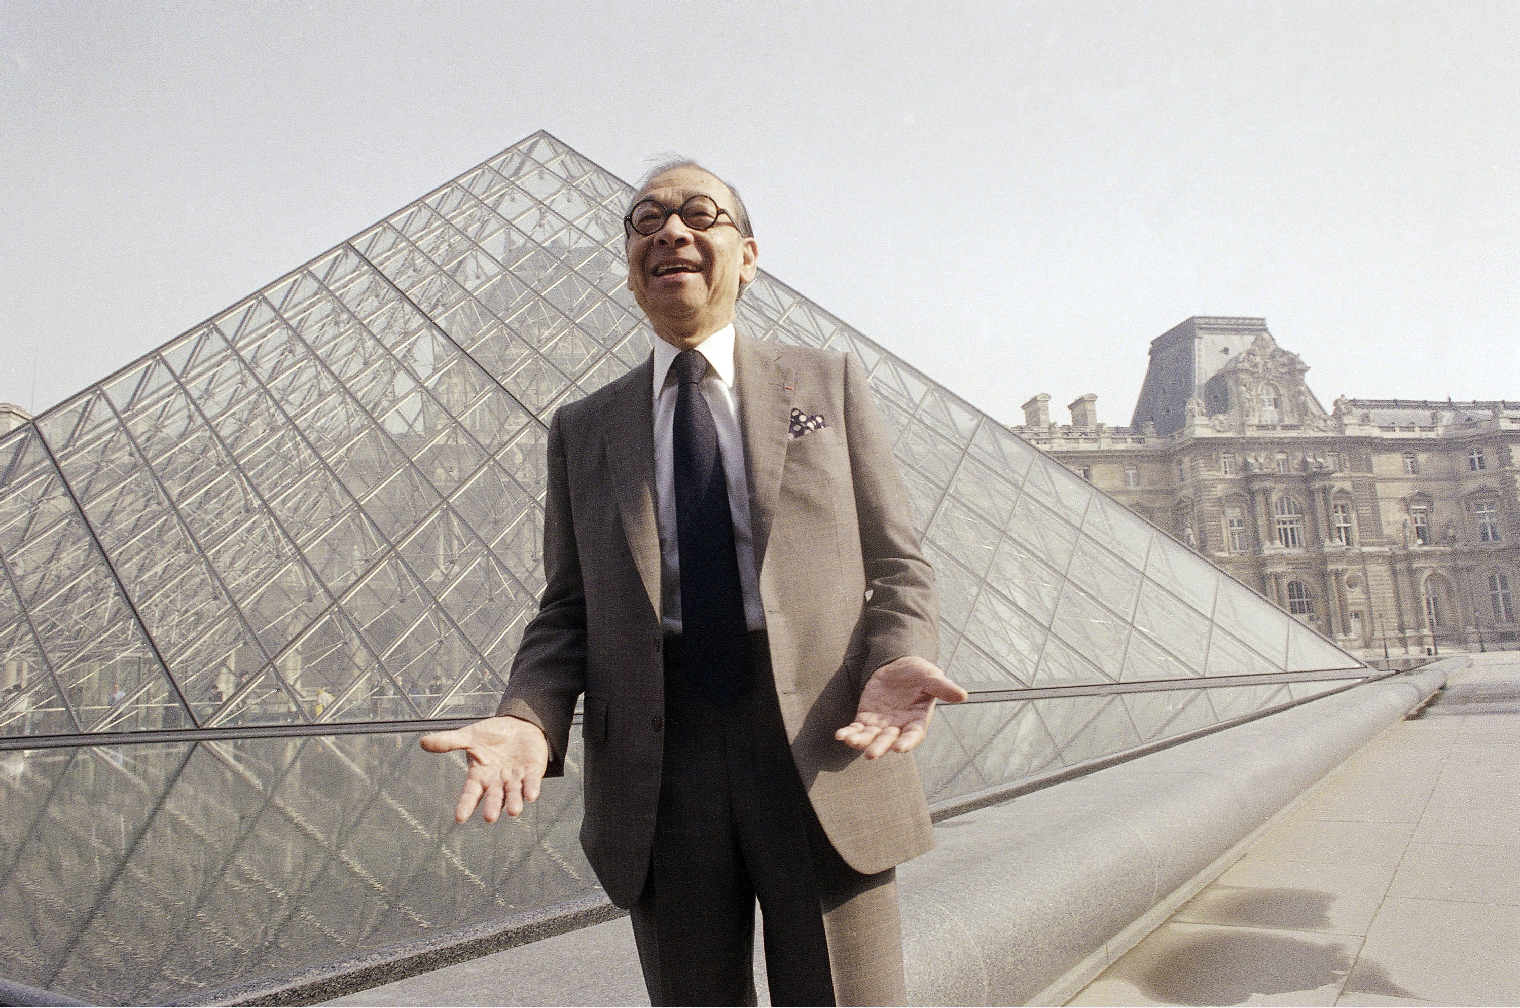 貝聿銘的代表作包括巴黎羅浮宮的玻璃金字塔]美聯社資料圖^